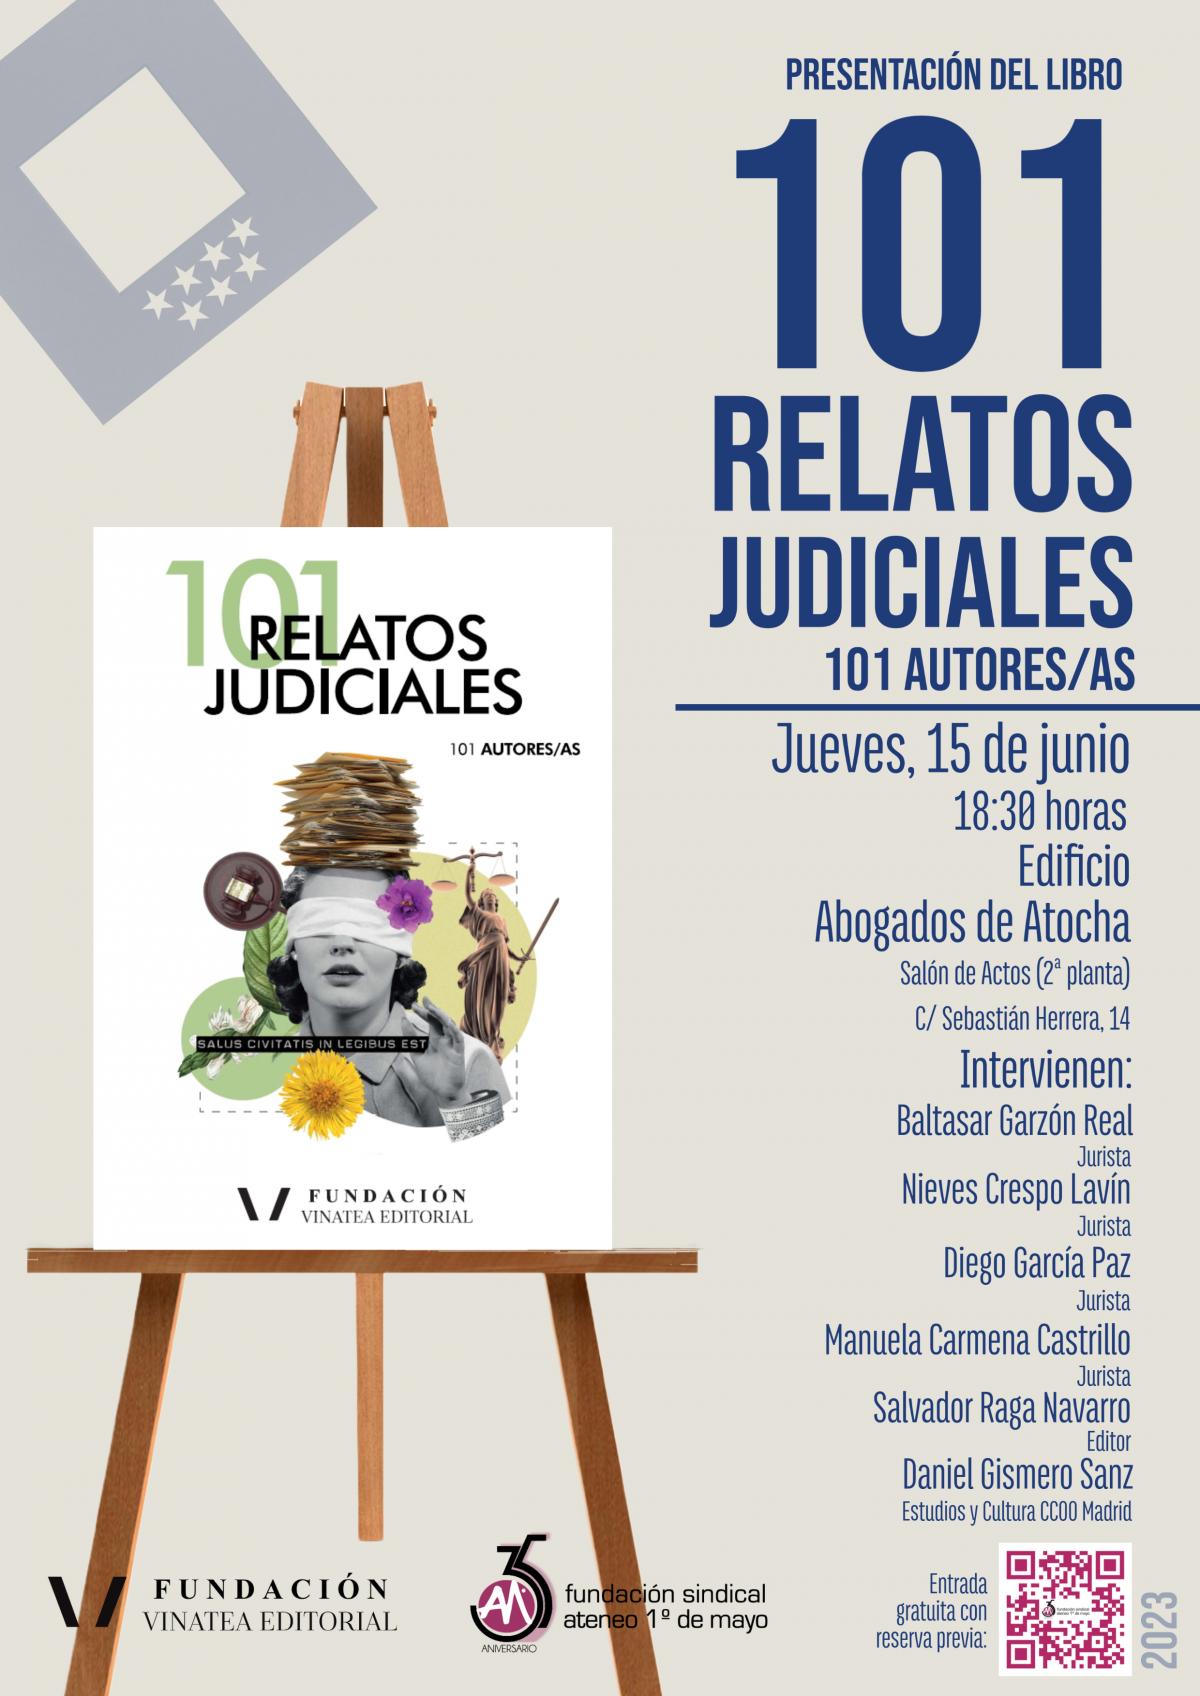 Presentación del libro "101 relatos judiciales"